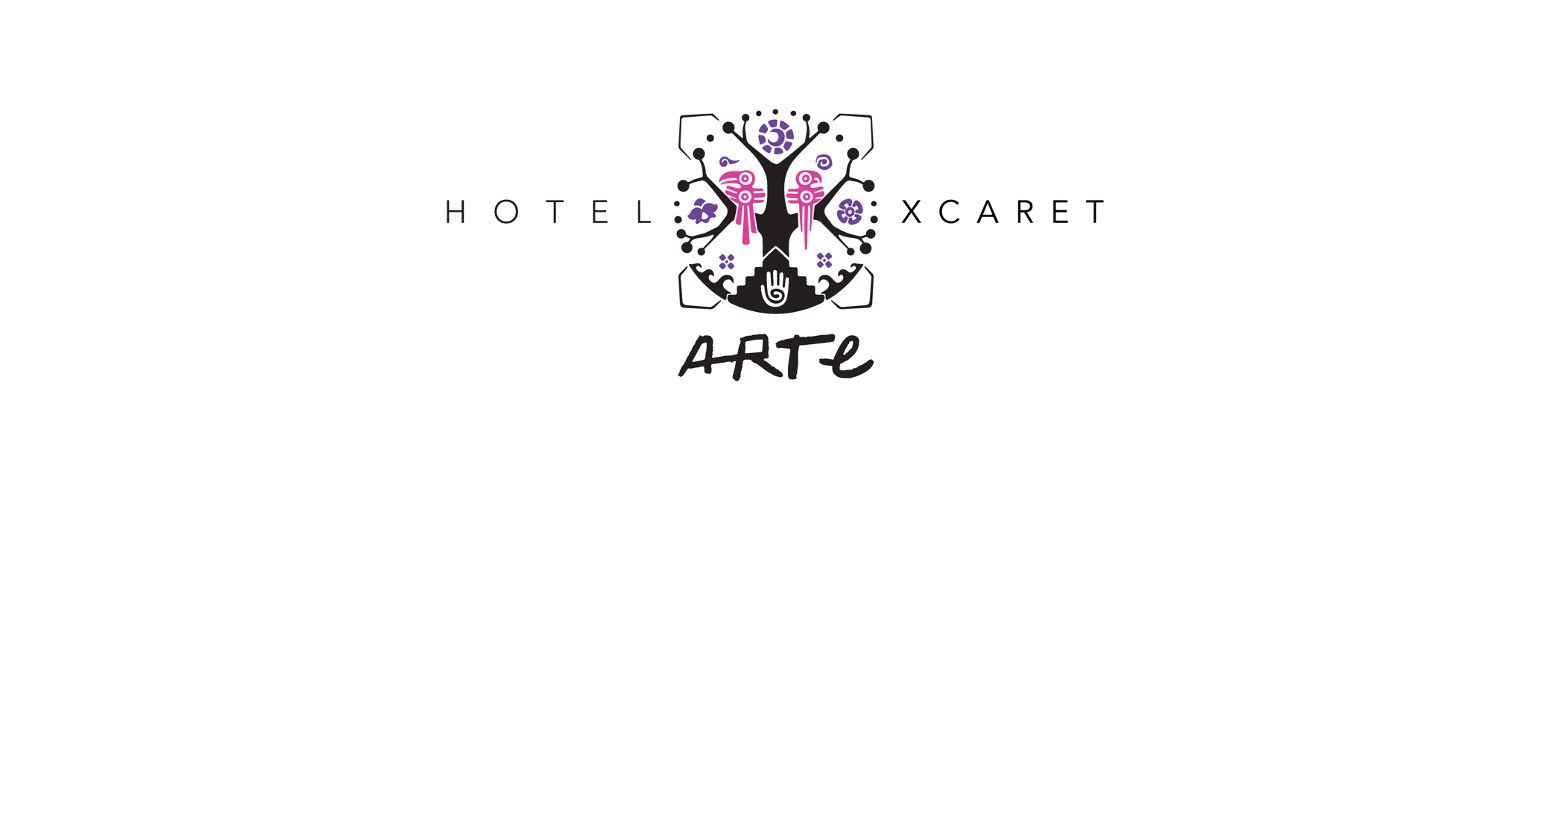 Xcaret Hotels logo